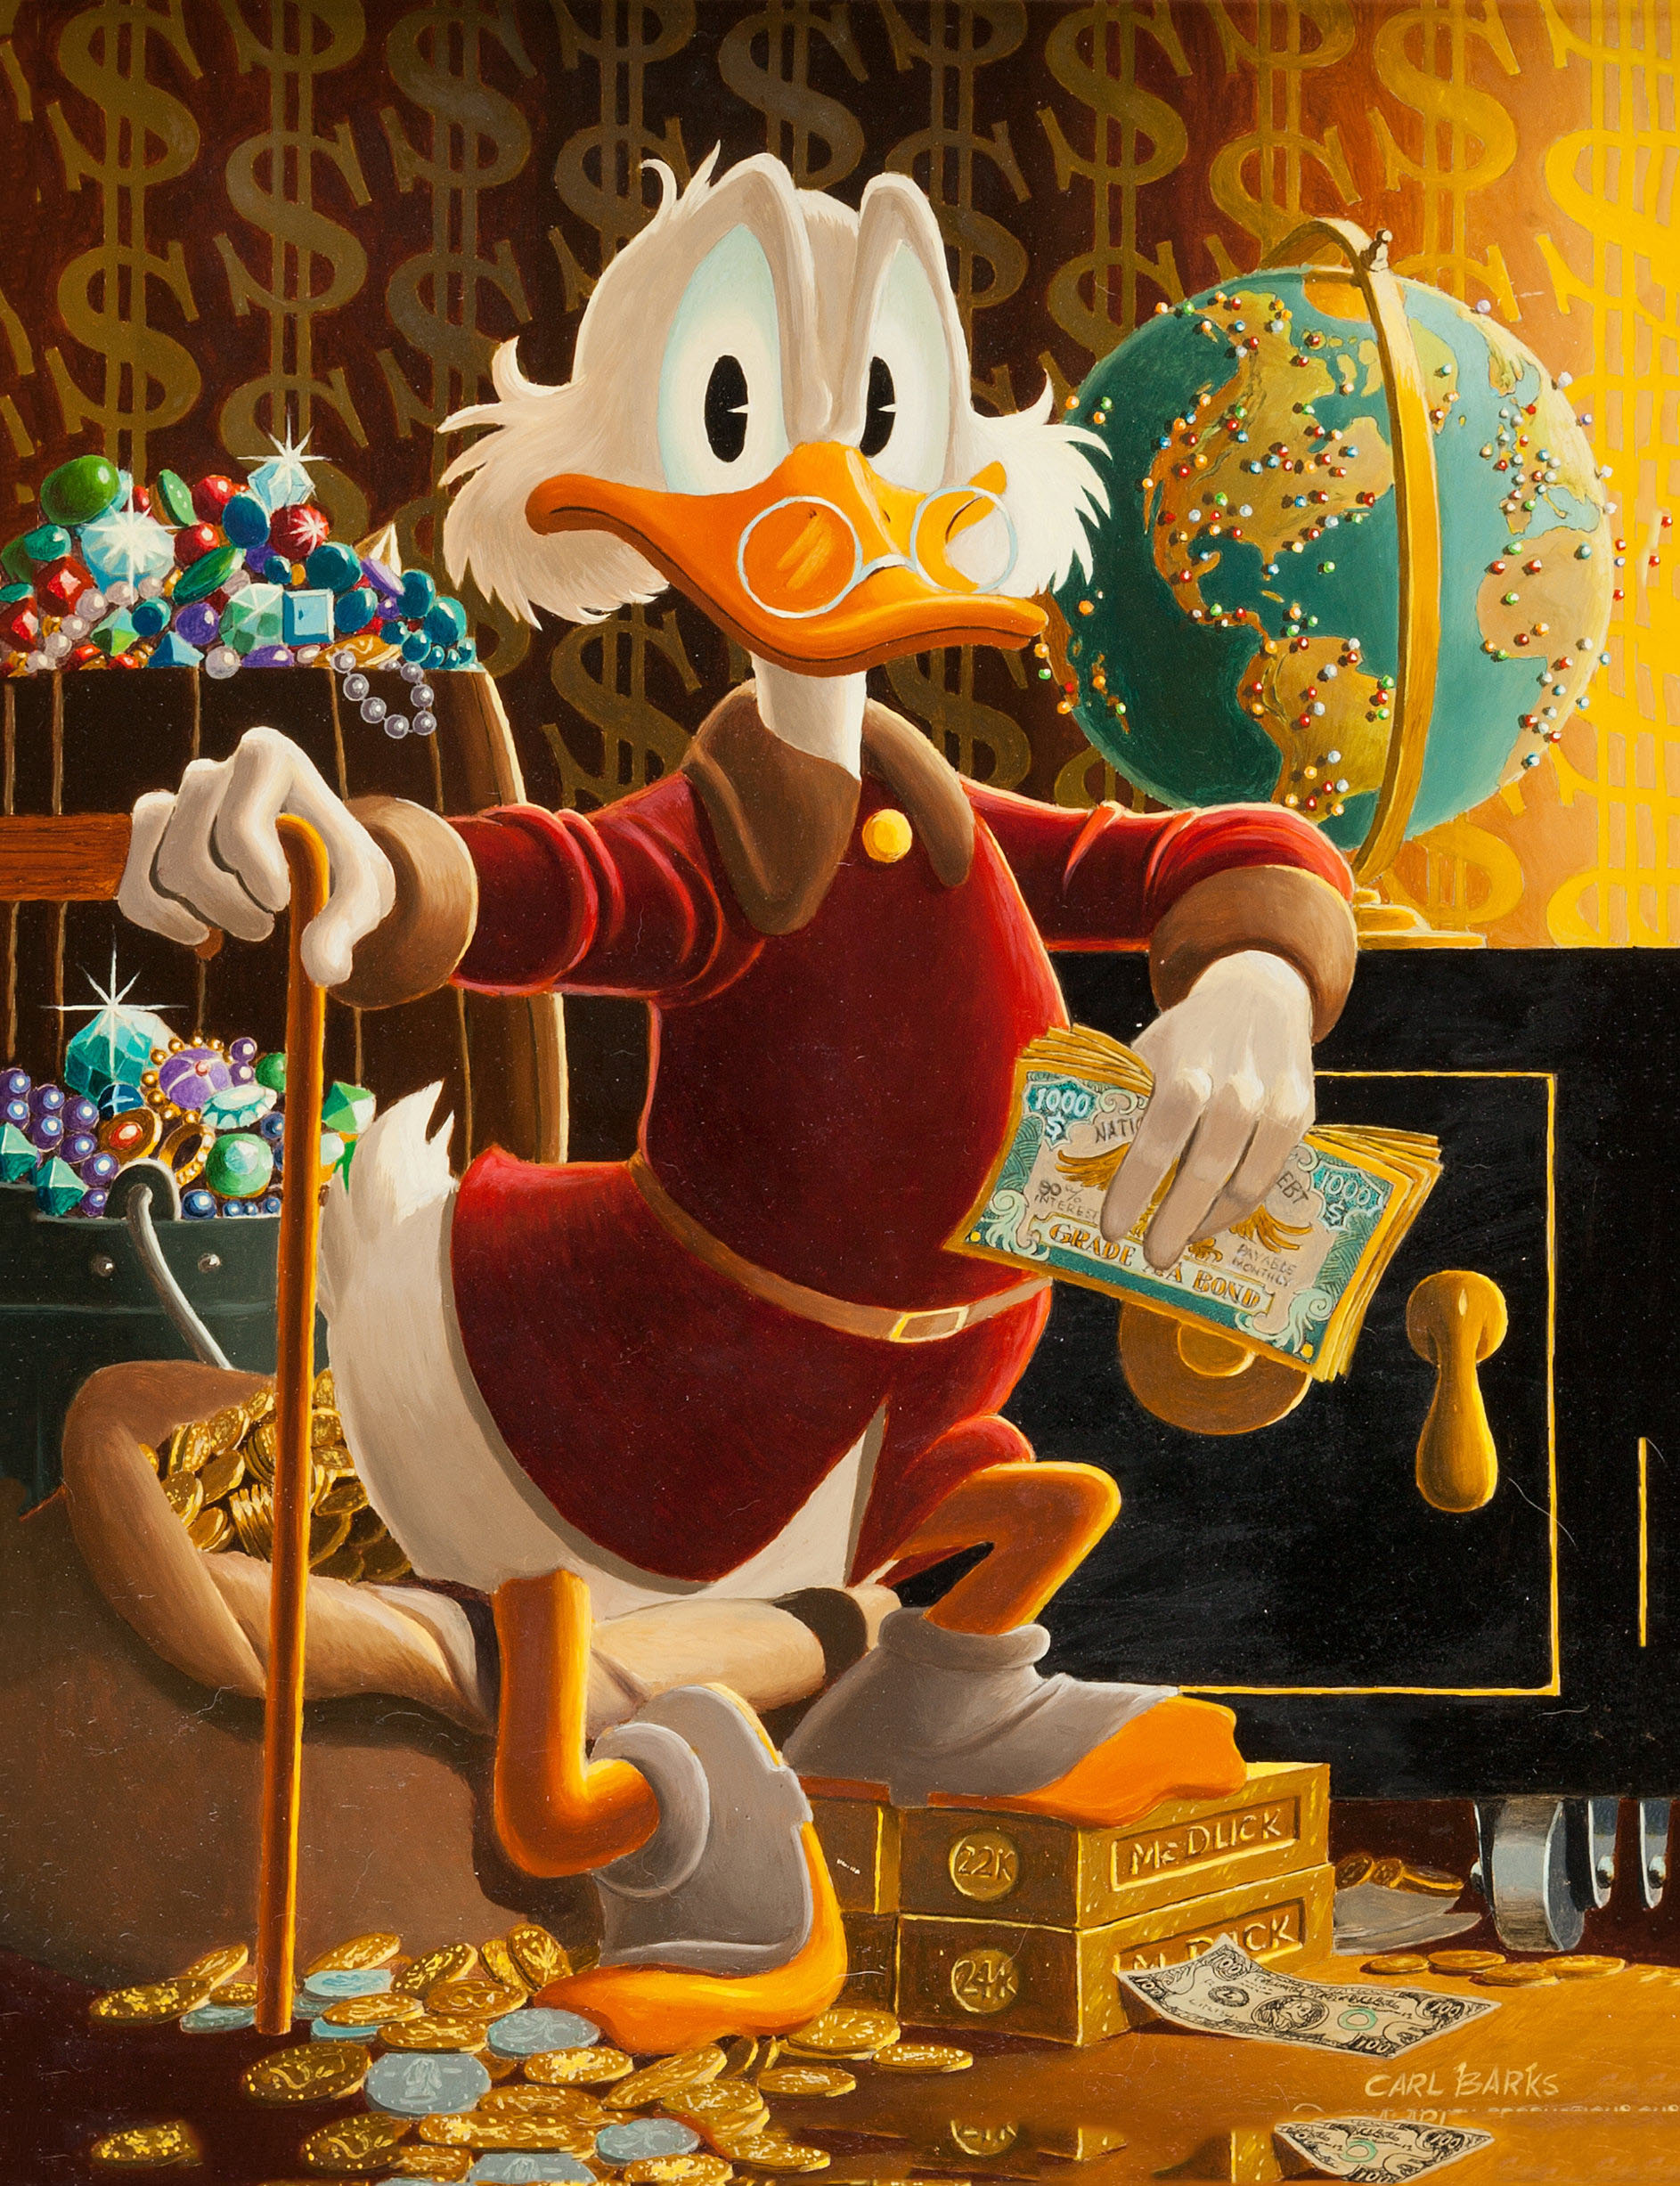 Hình nền  hình minh họa vịt Donald hoạt hình Pixel Commodore 64 phông  chữ bìa album 1600x1200  wpactress  158347  Hình nền đẹp hd  WallHere